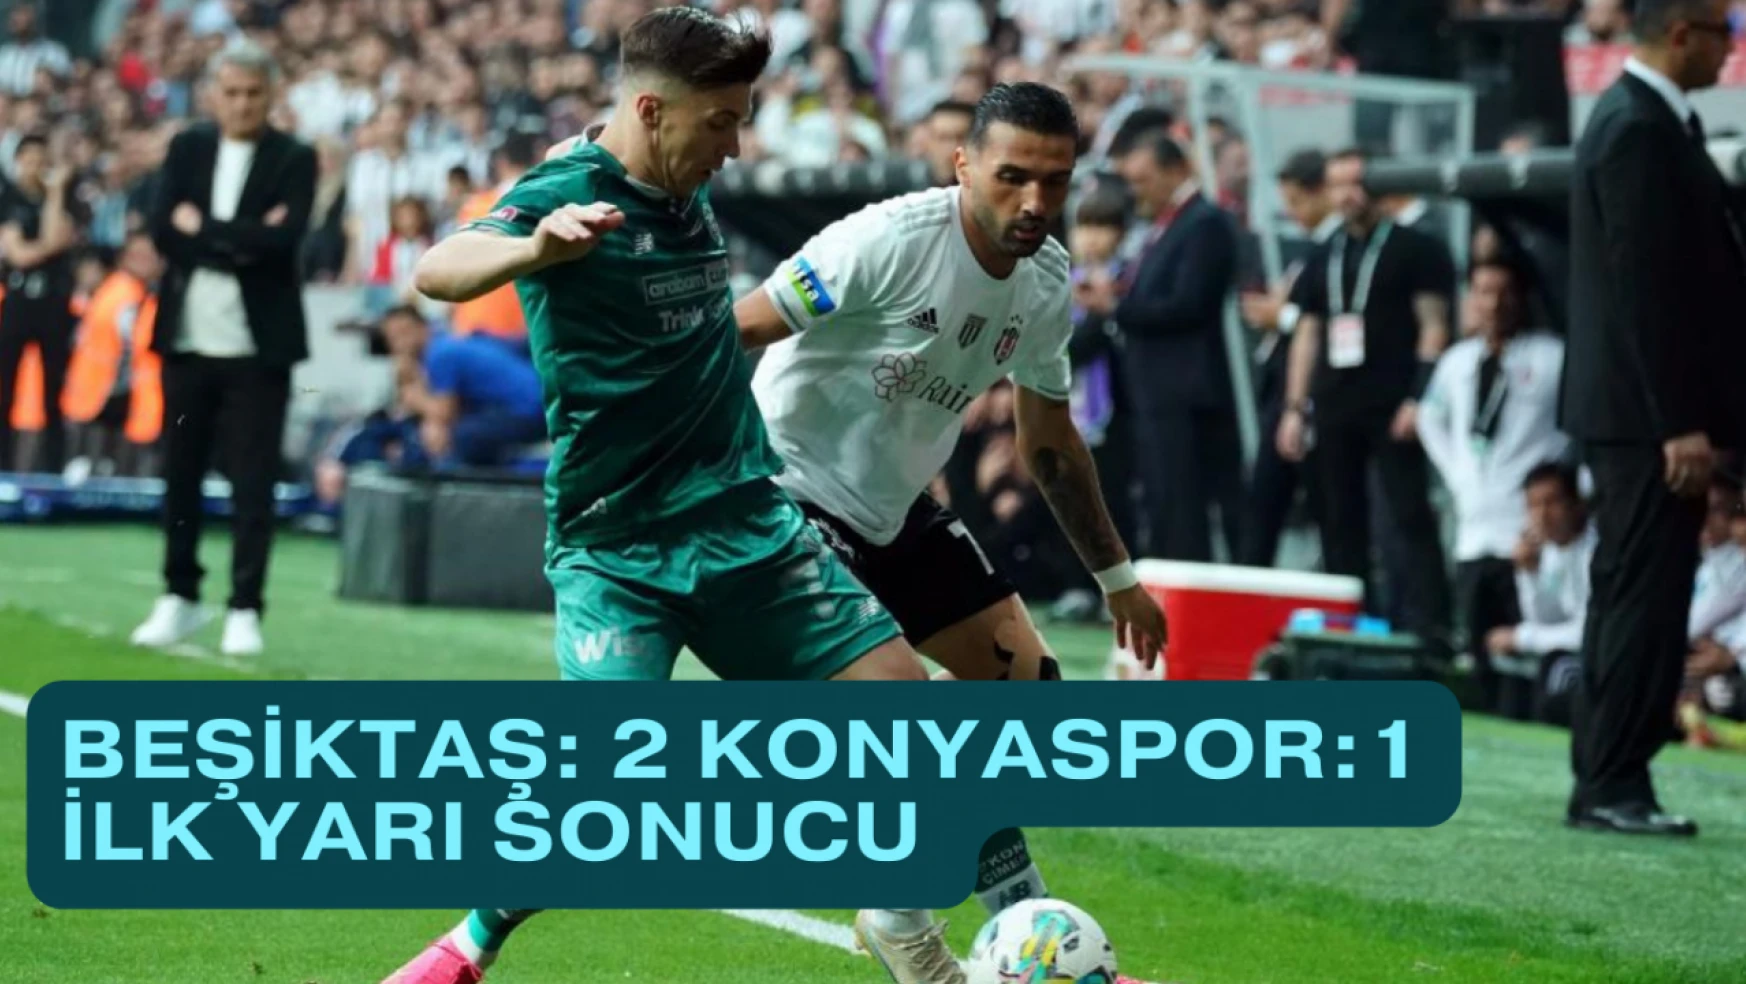 Beşiktaş: 2 - Konyaspor: 1 İlk yarı sonucu